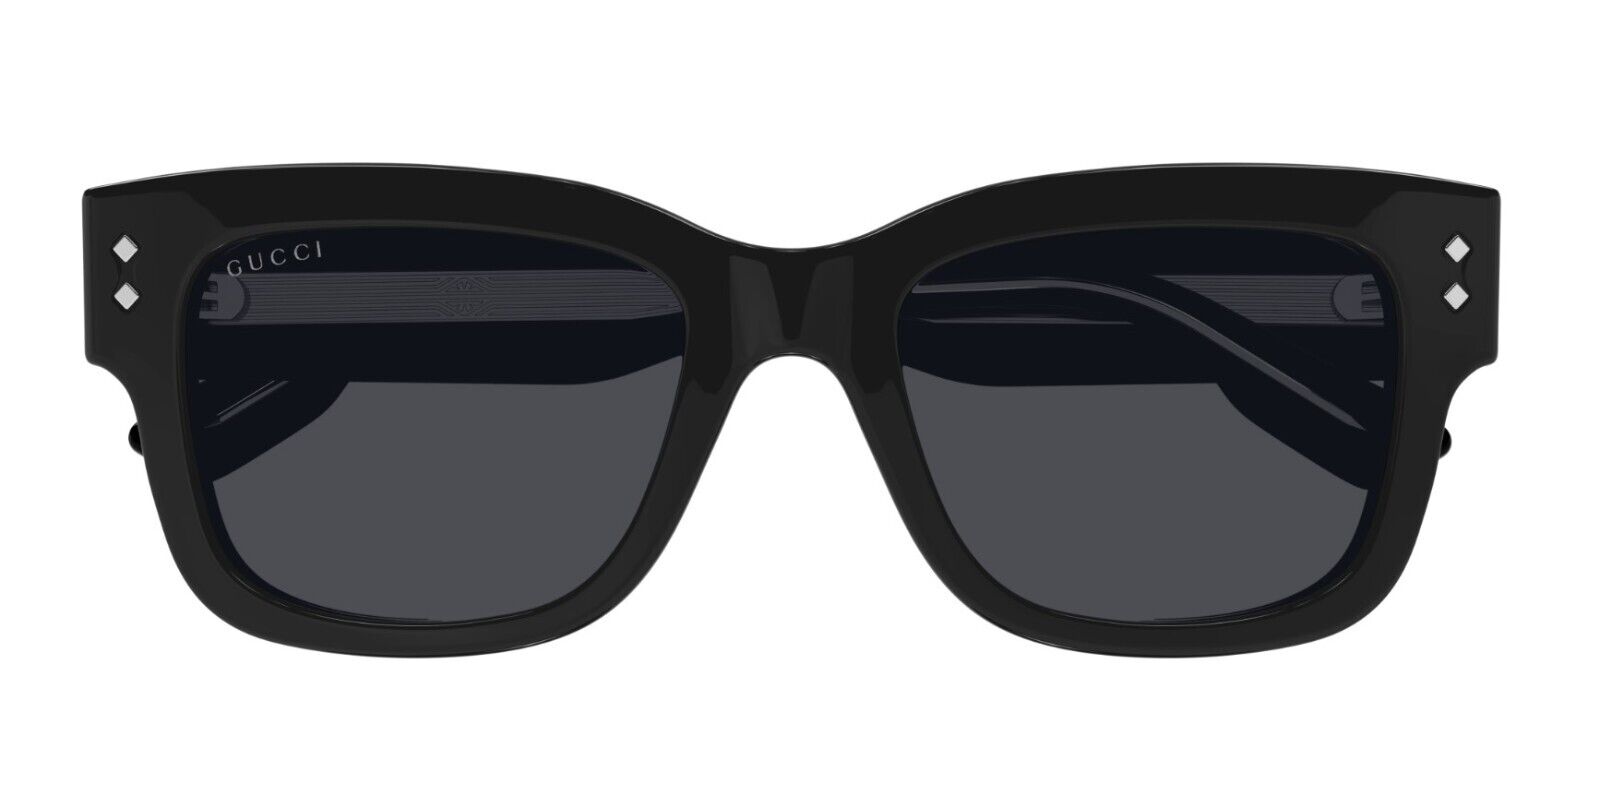 Gucci GG1217S 001 Black/Grey Square Men's Sunglasses